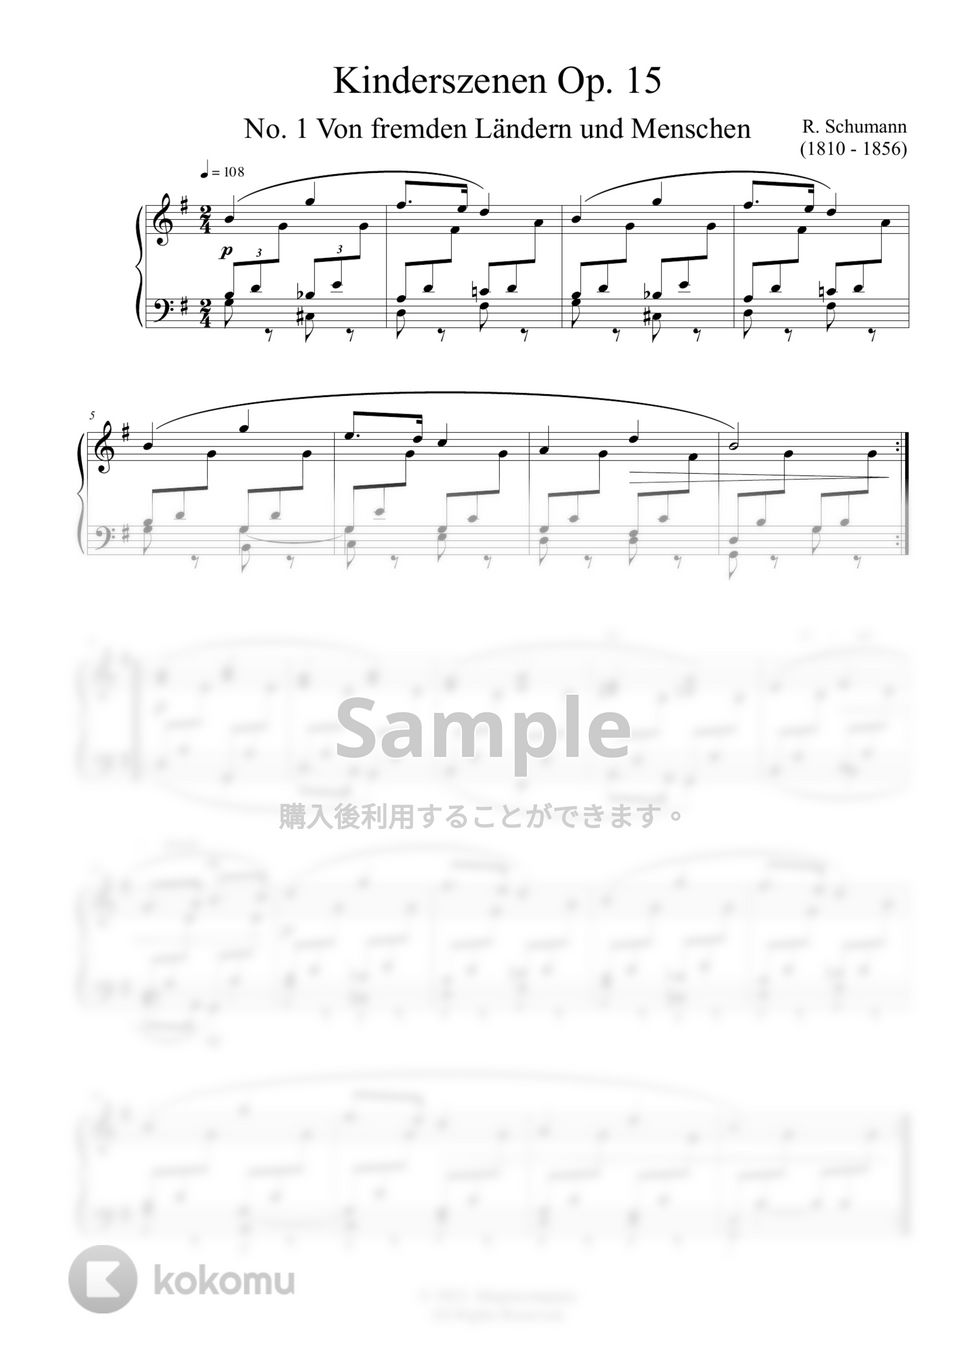 シューマン - 子供の情景 楽譜 by ココミュオリジナル